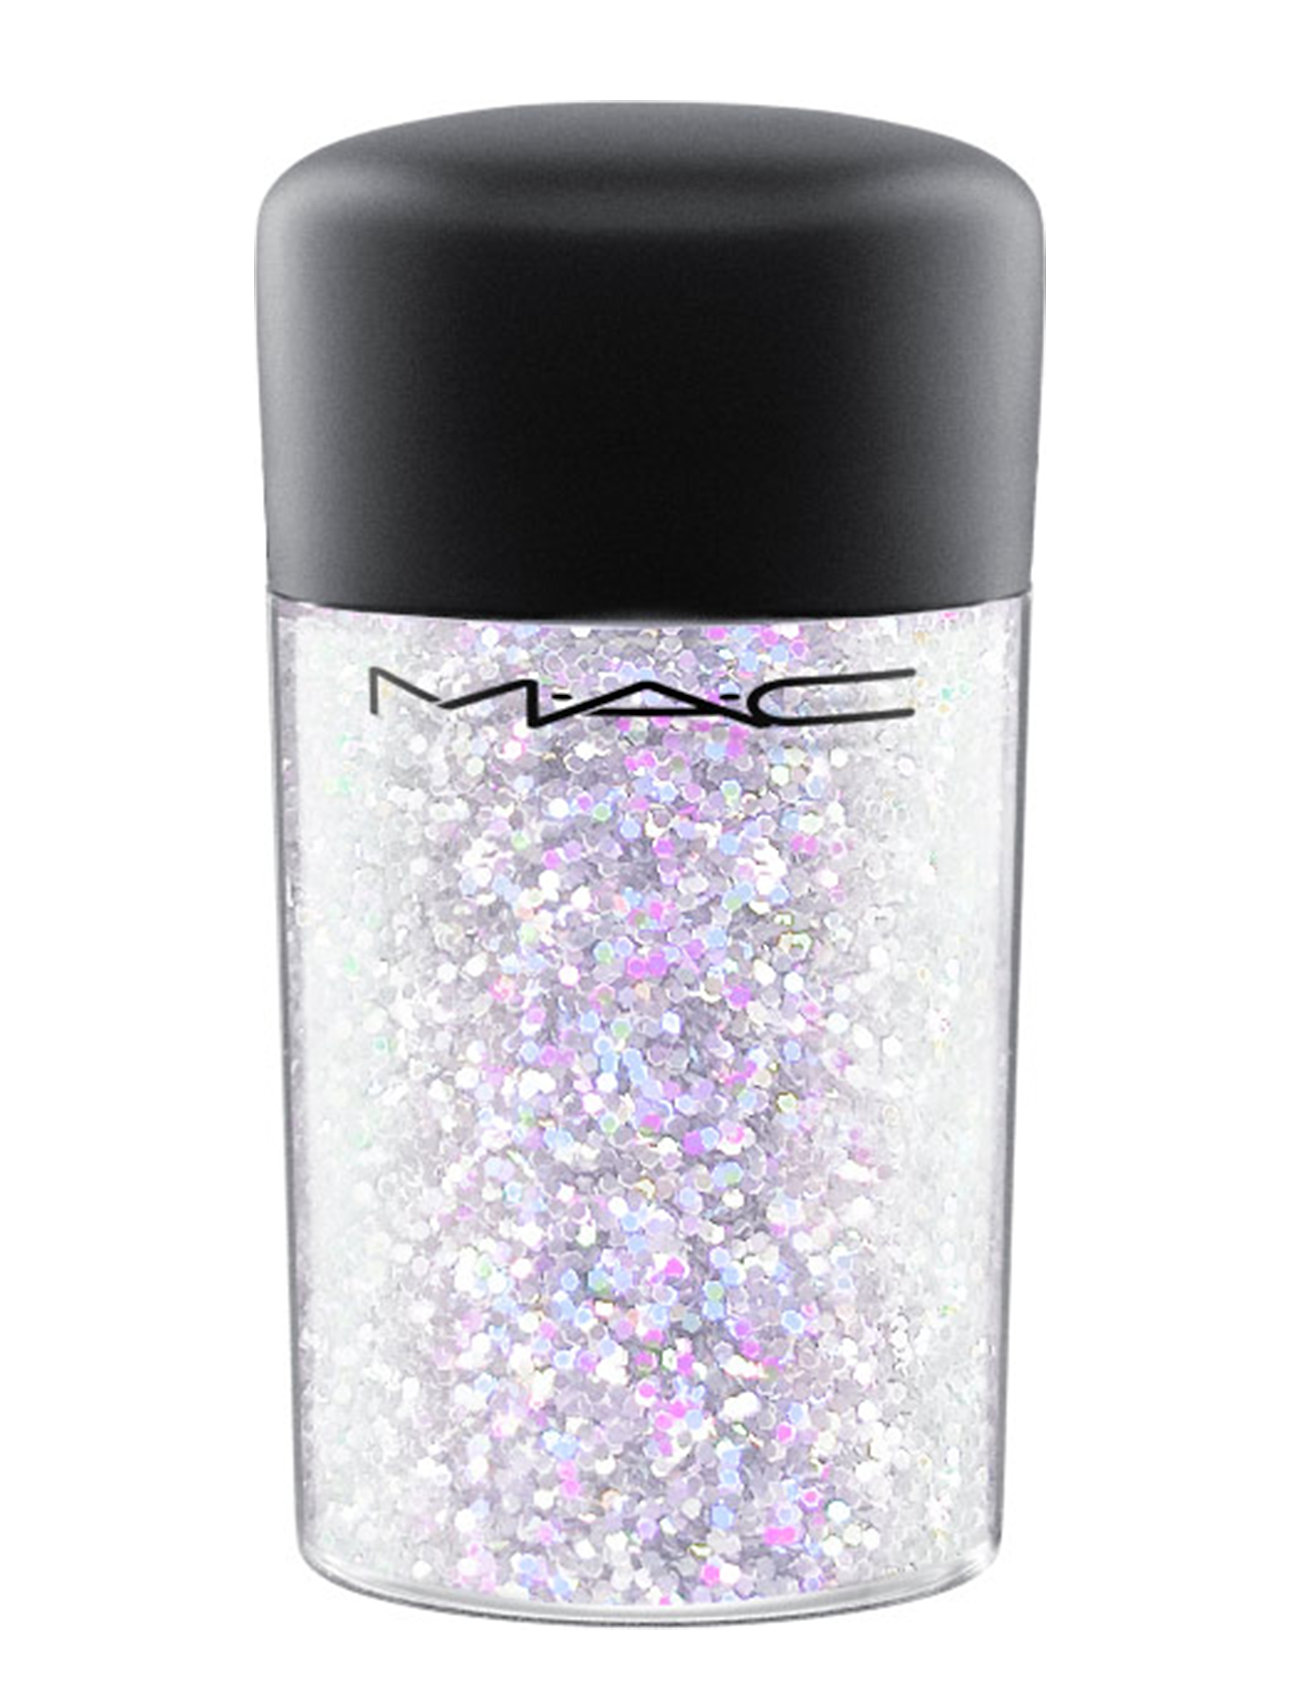 Glitter - Iridescent White Highlighter Contour Makeup MAC